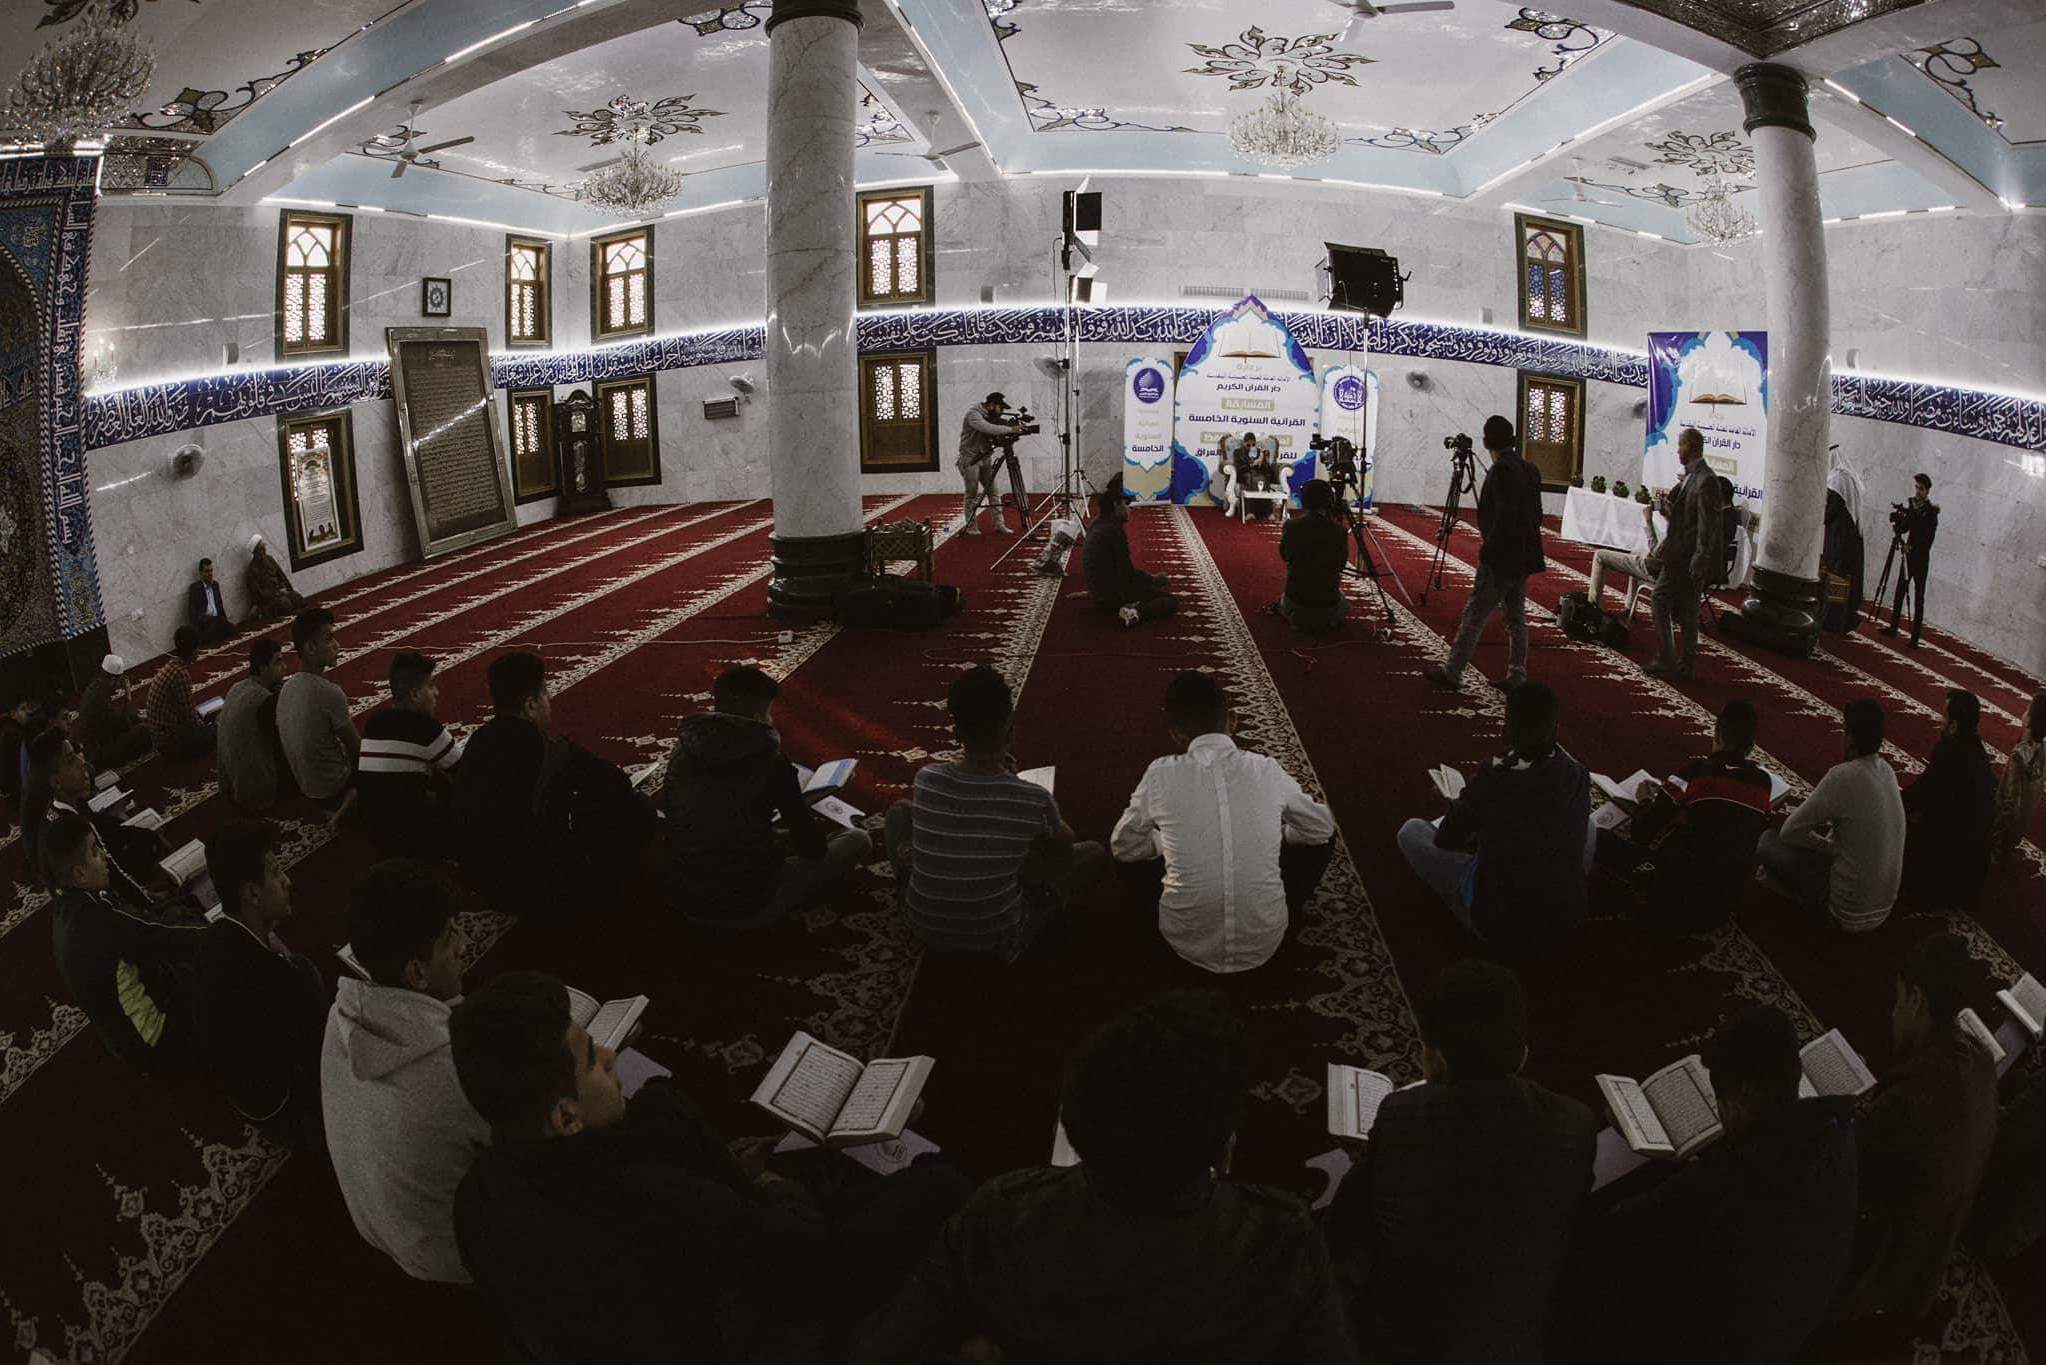 دار القرآن الكريم تشهد انطلاق أعمال المسابقة السنوية الخامسة لمشروع الألف حافظ